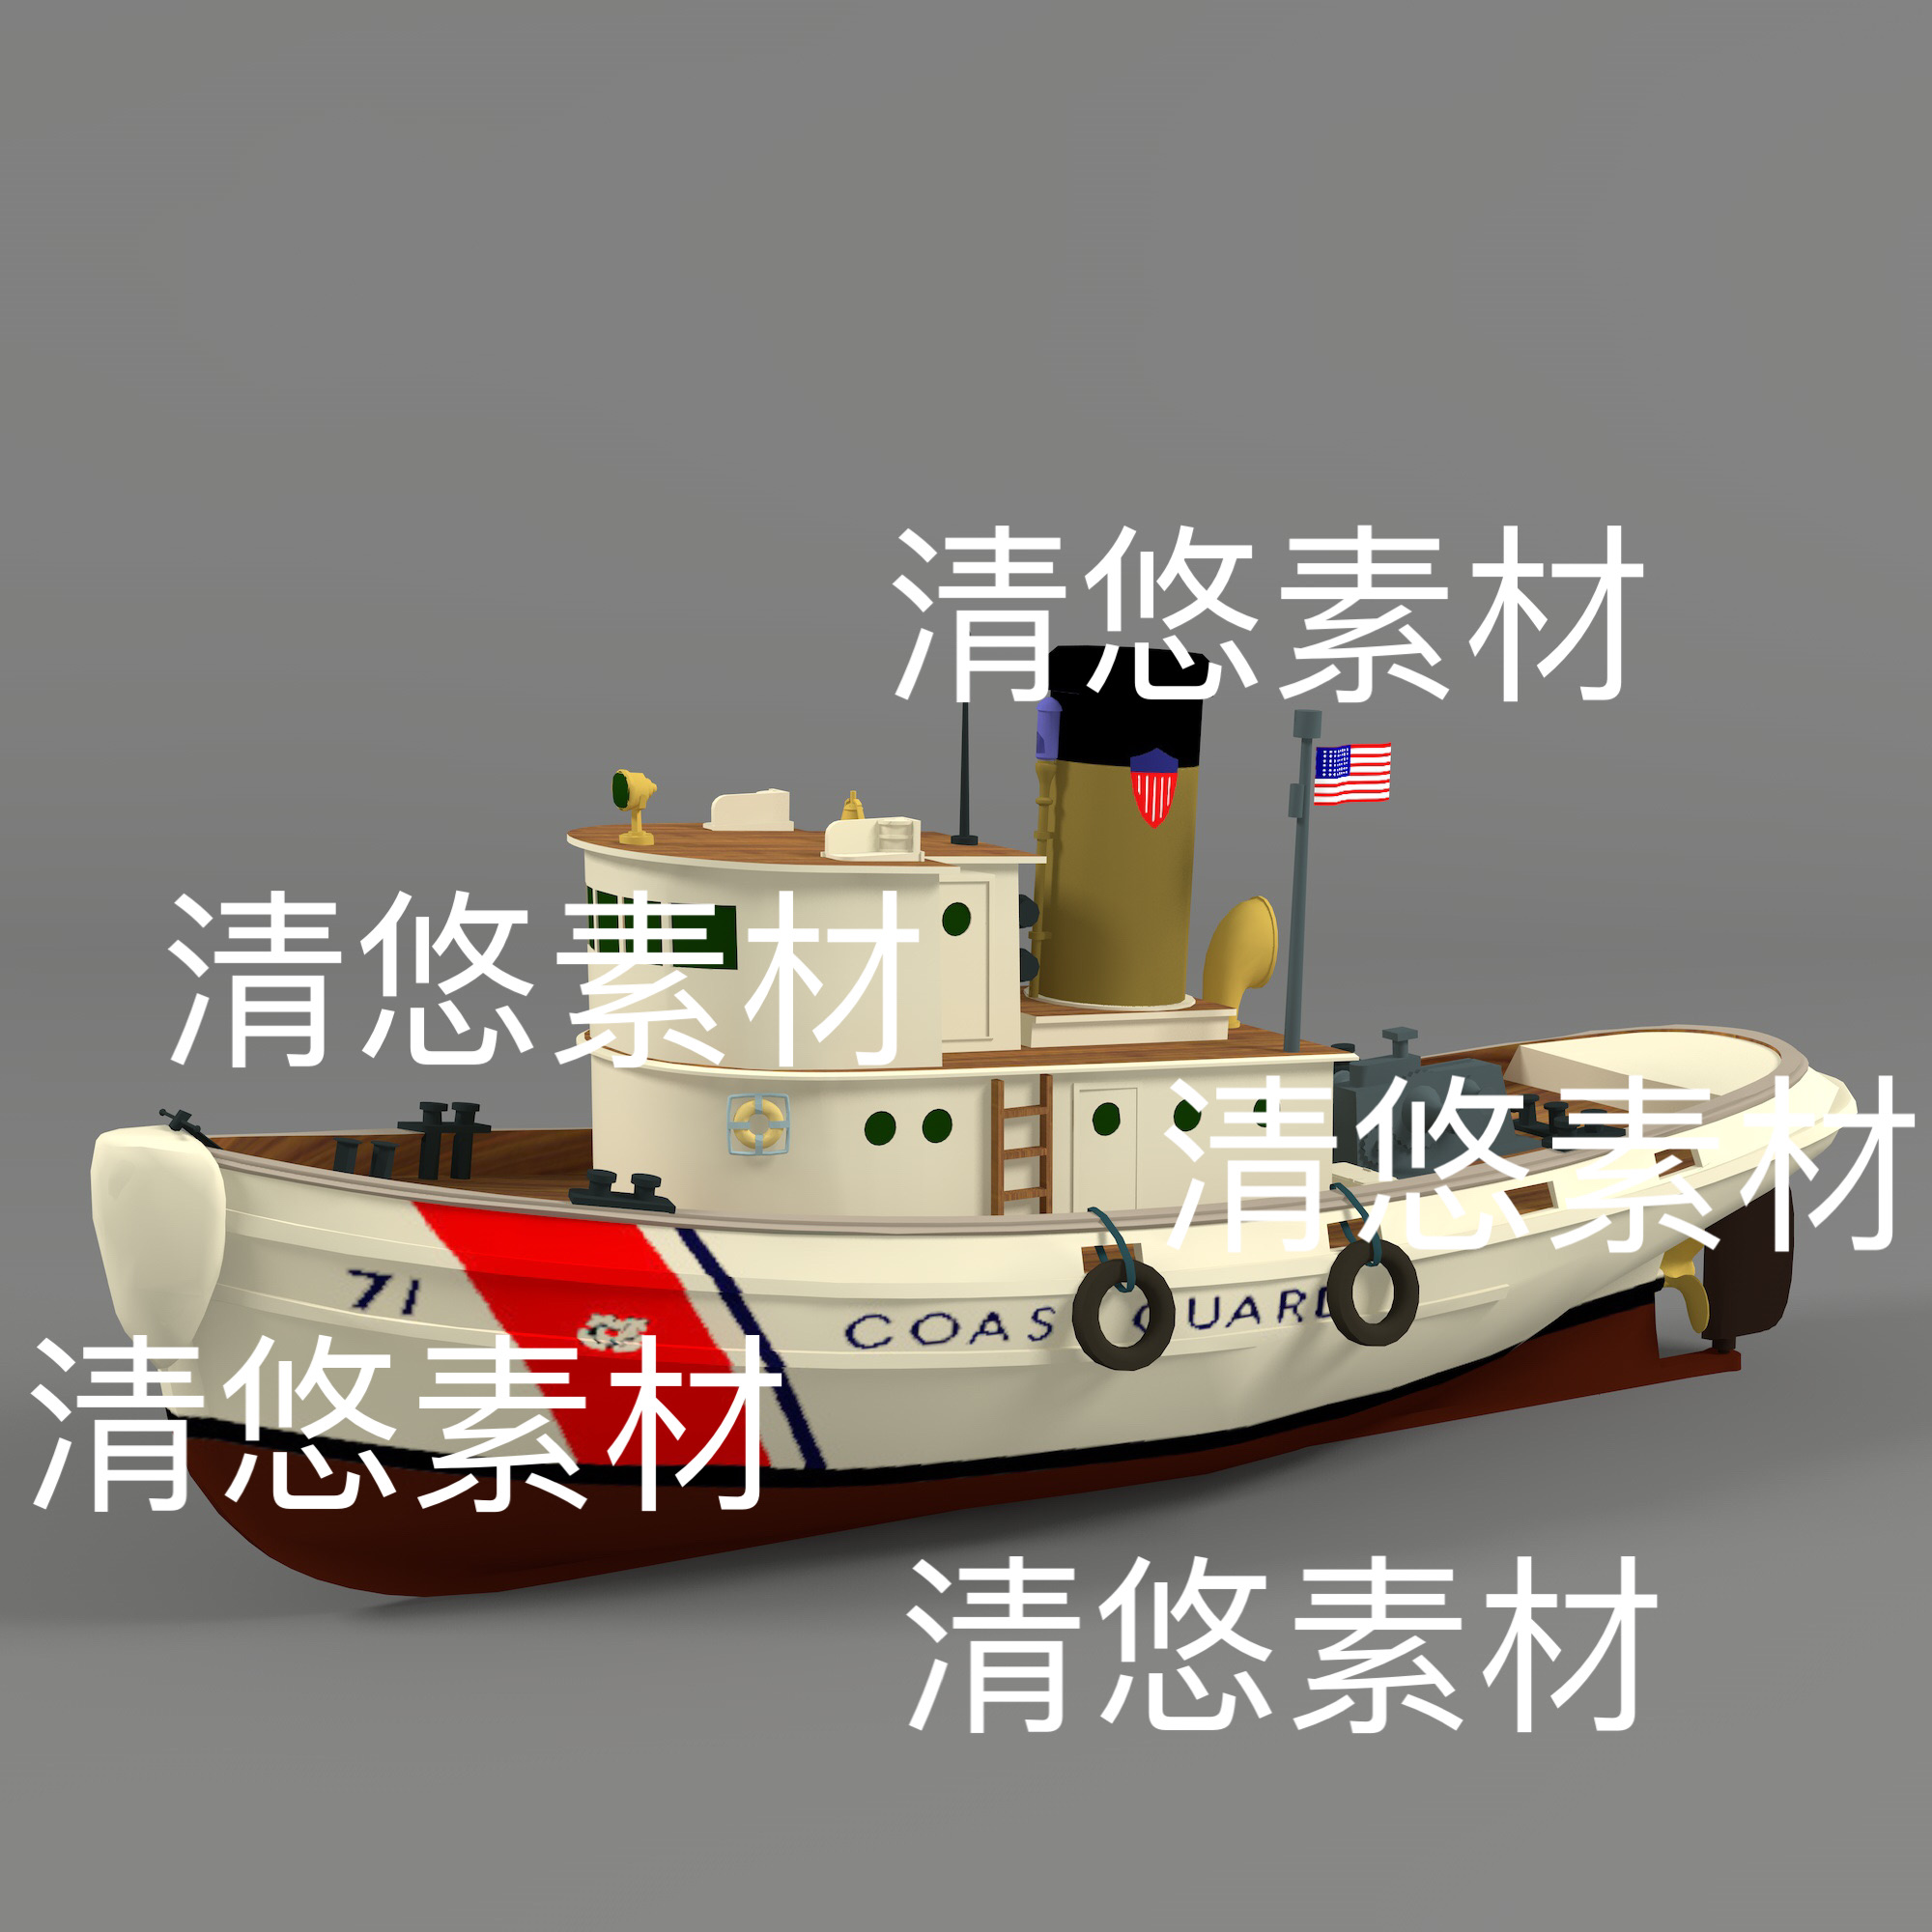 c4d fbx obj格式美国轮船巡逻船海上交通工具低模文件 非实物D602